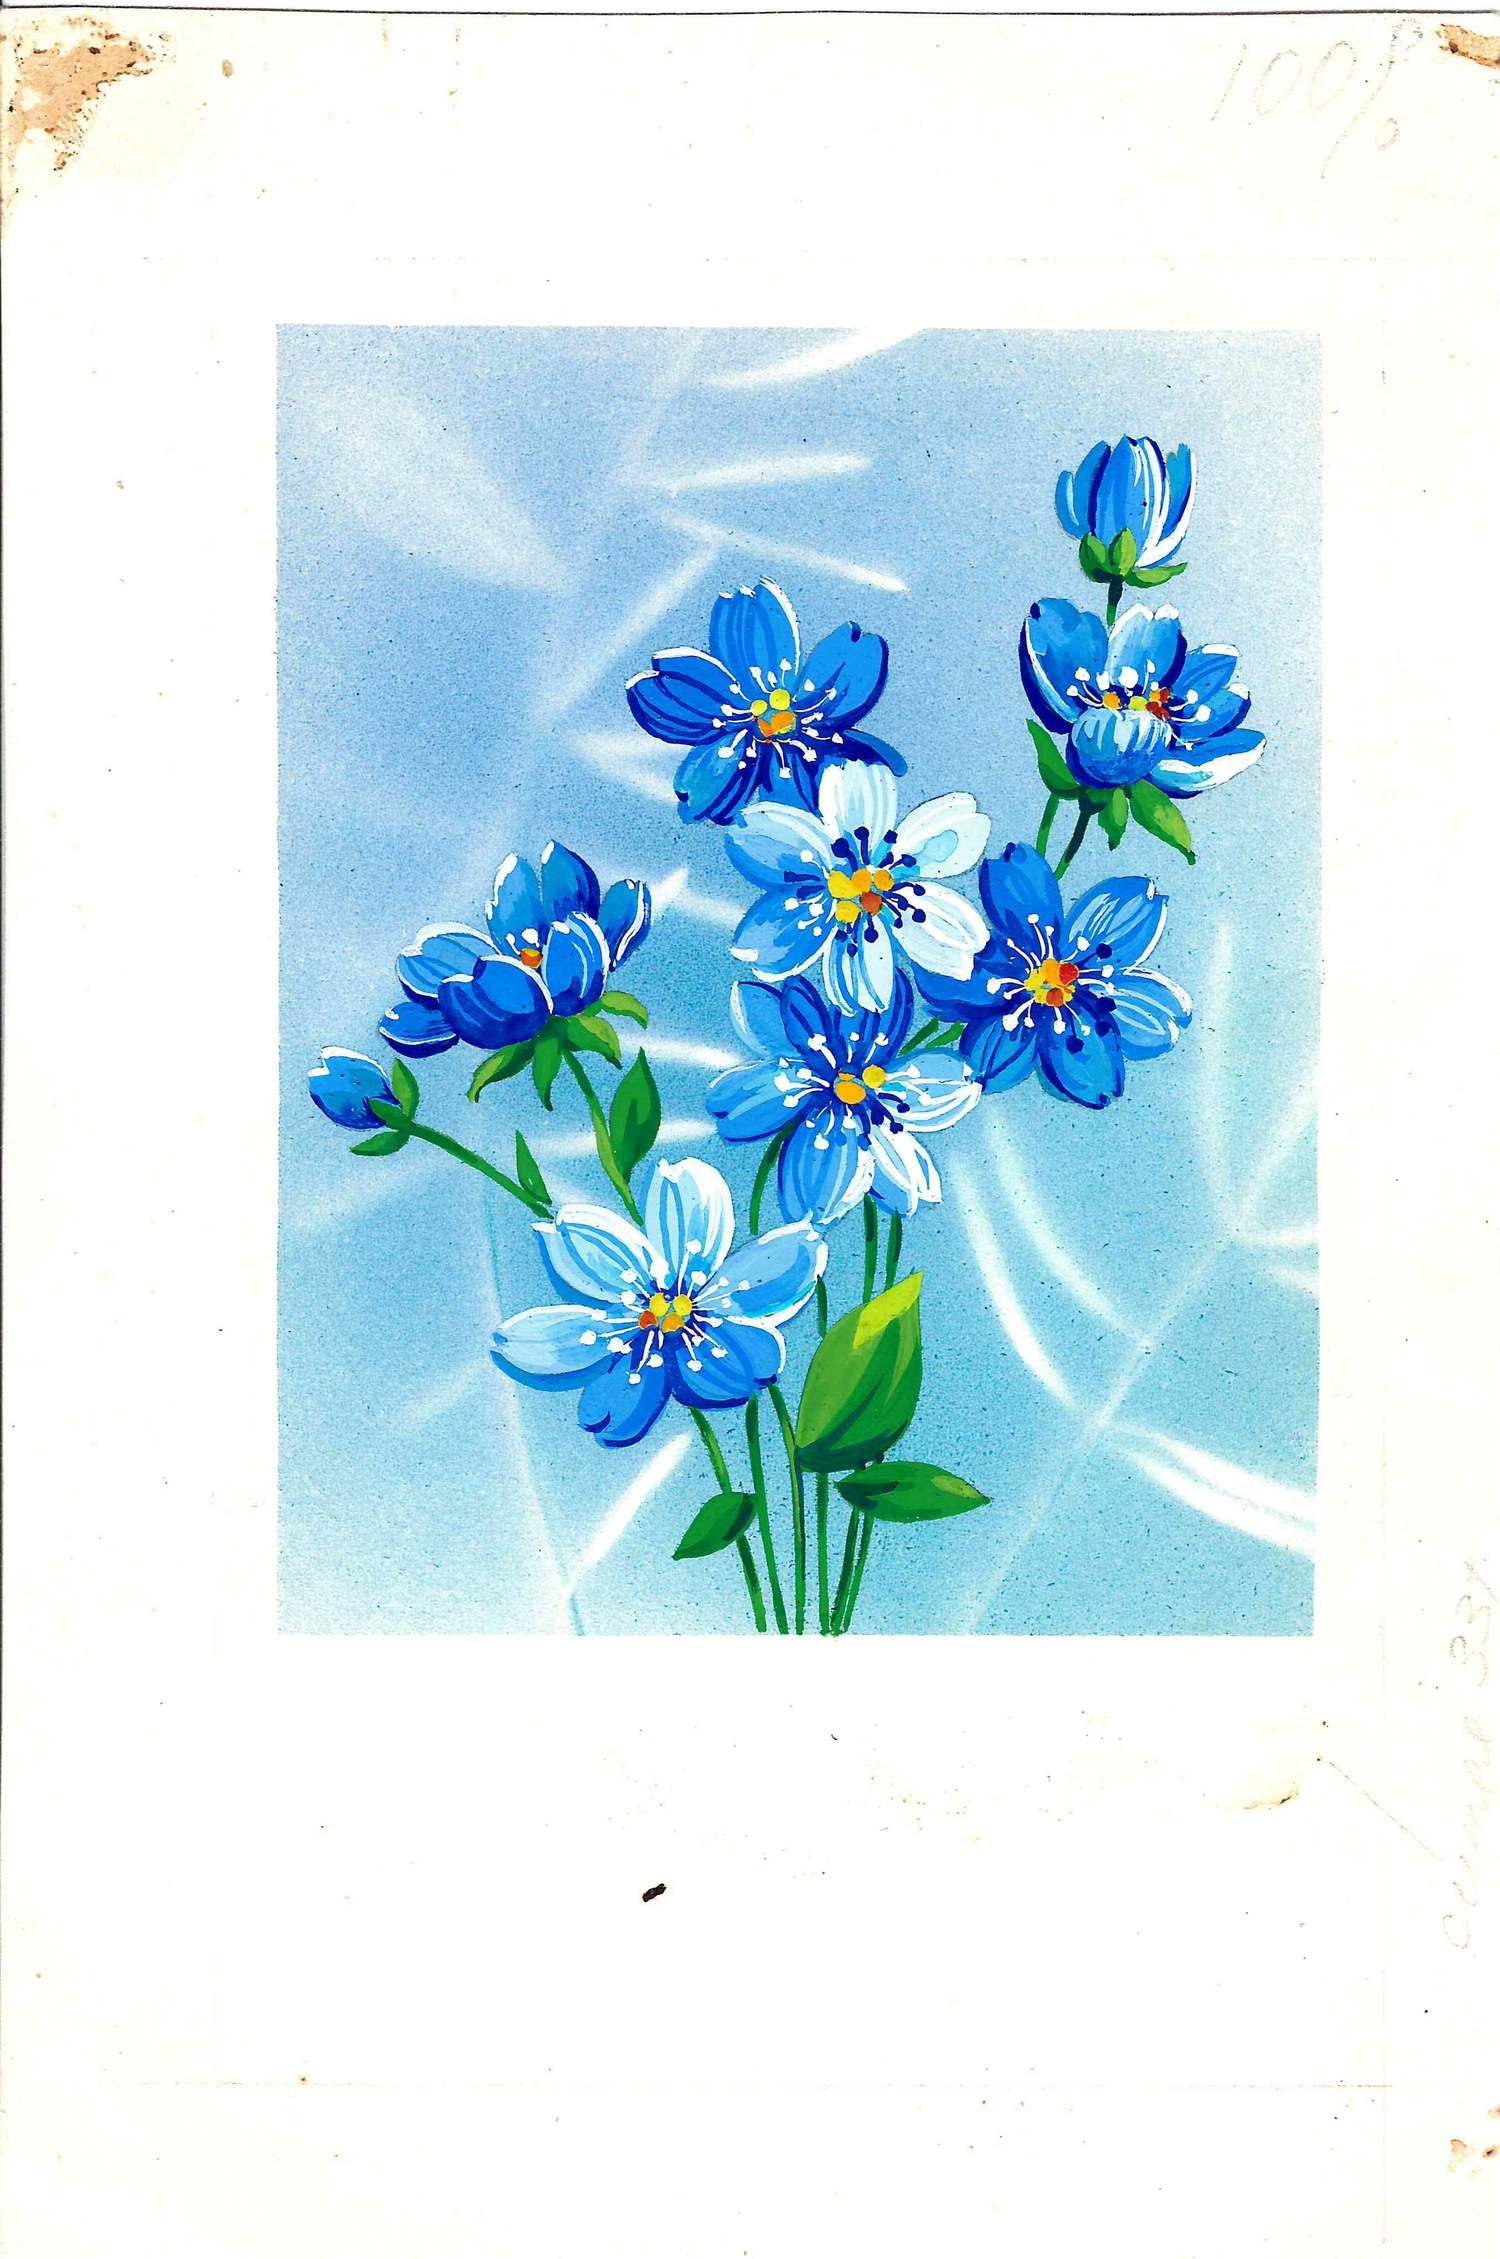 Канищева О. Оригинальный макет открытки «Незабудки». 1988.